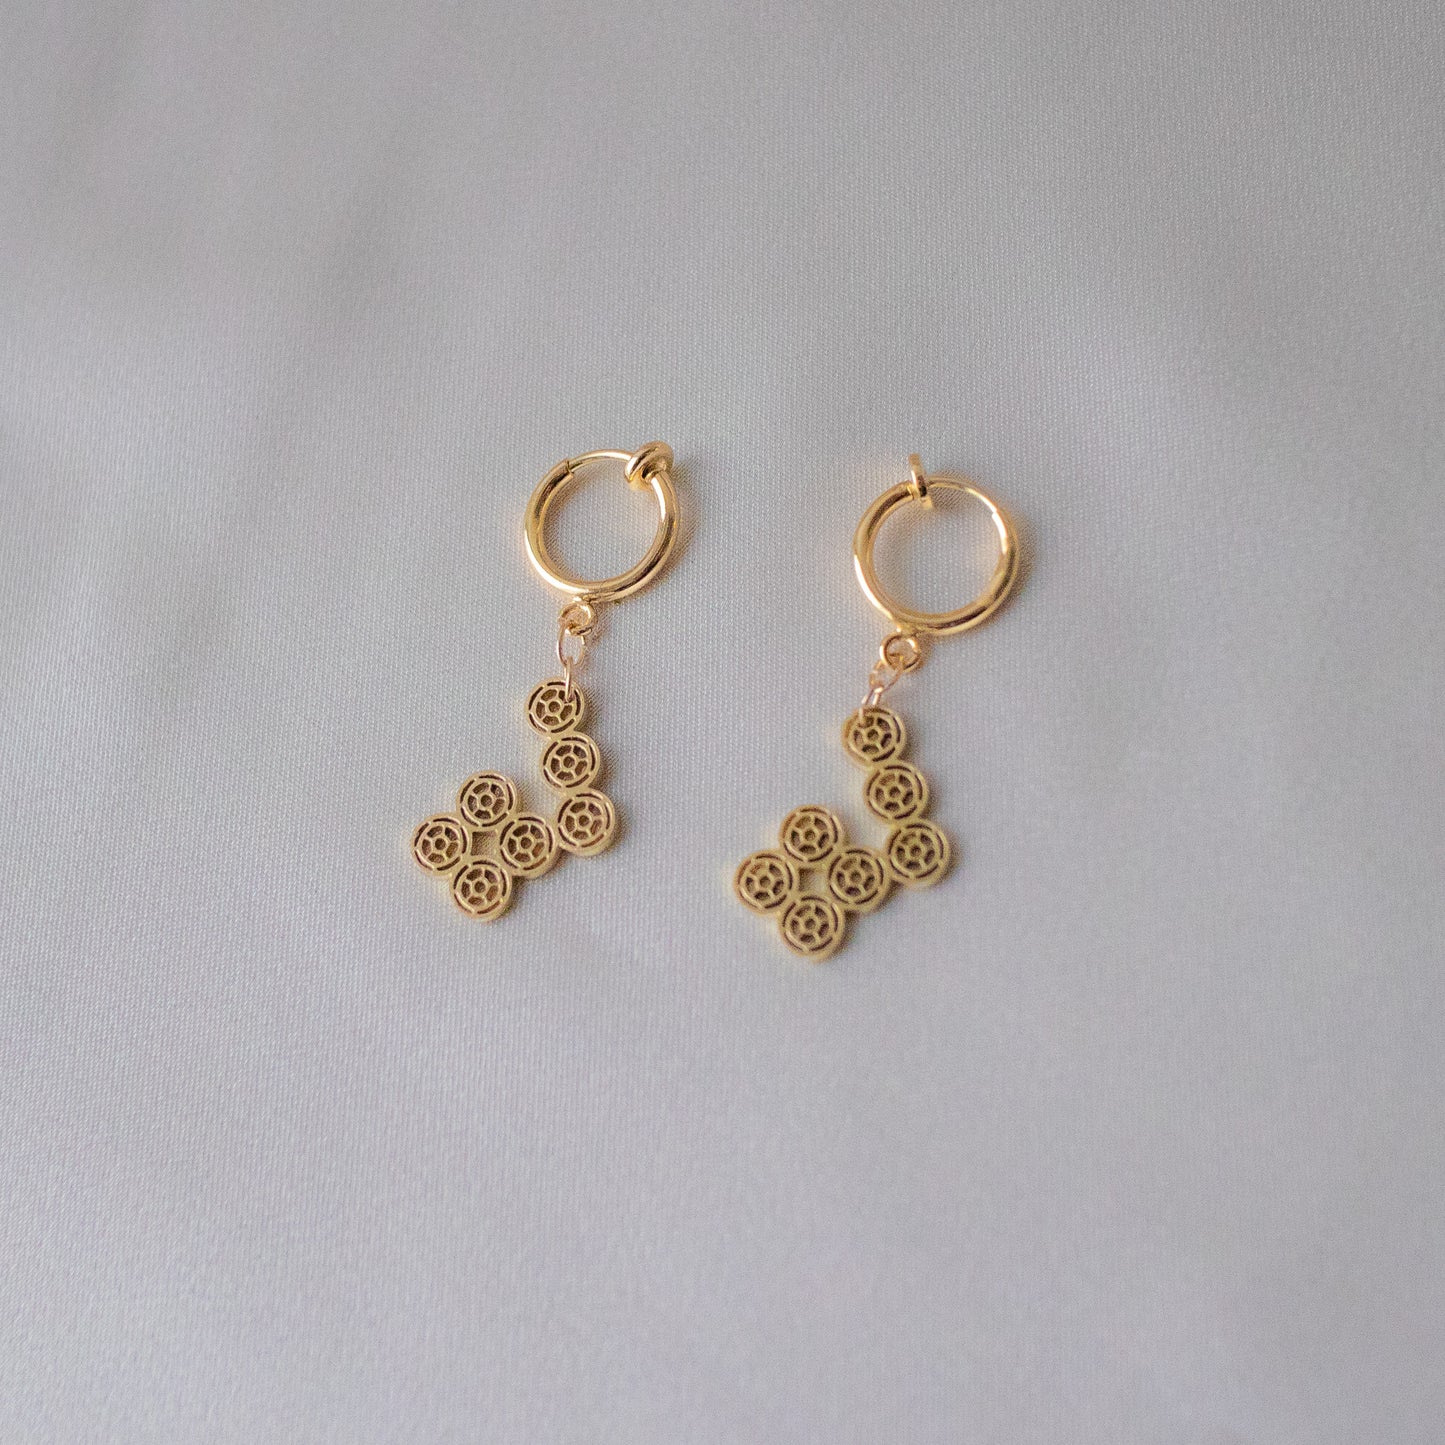 7-dots simple earrings